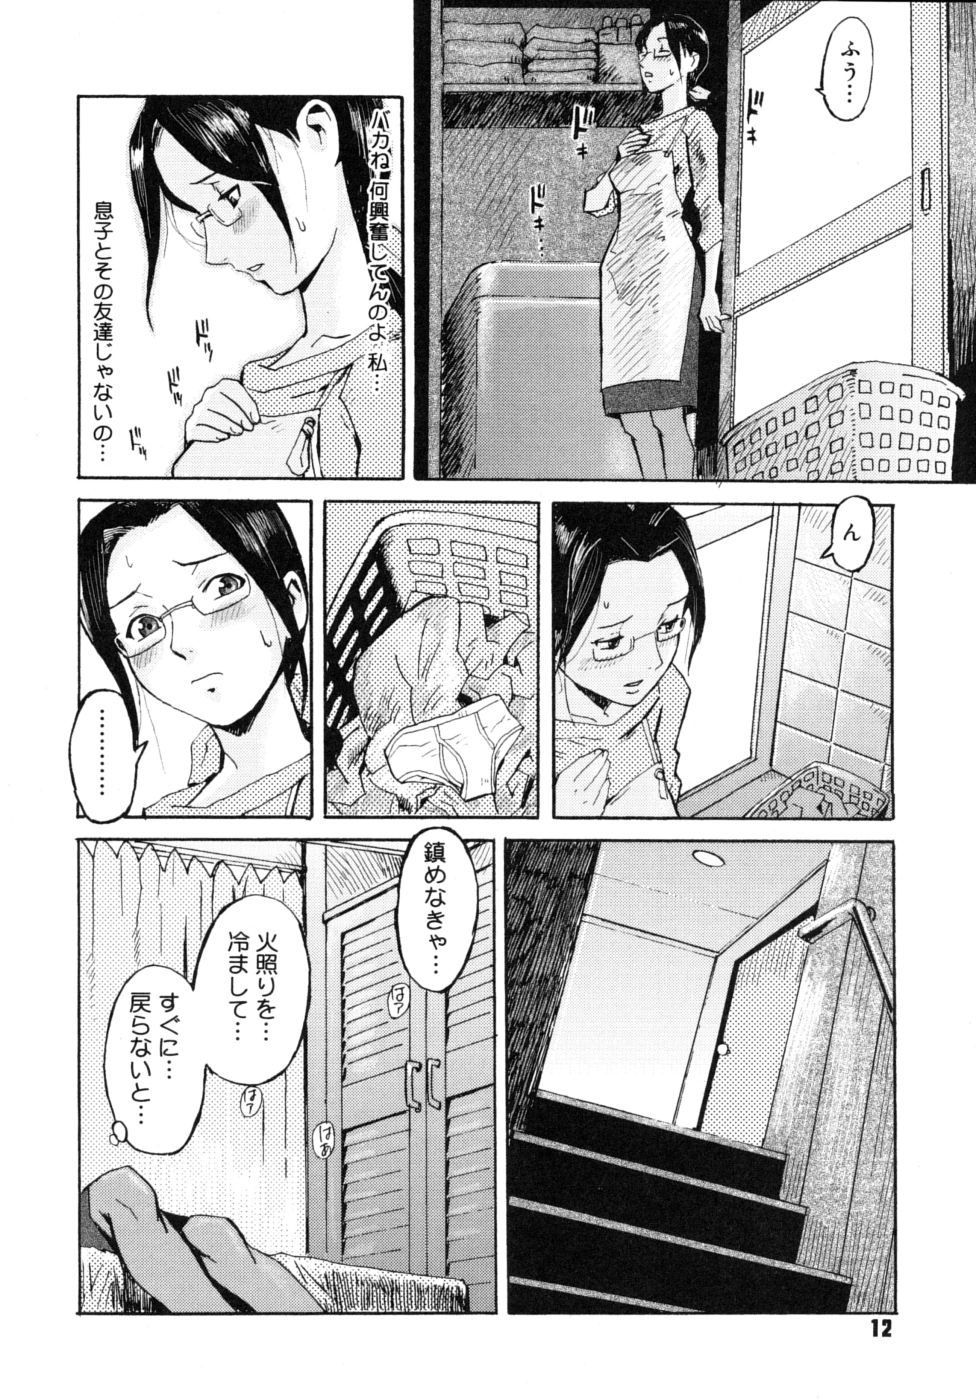 [Kuroiwa Menou] Milk Crown page 14 full